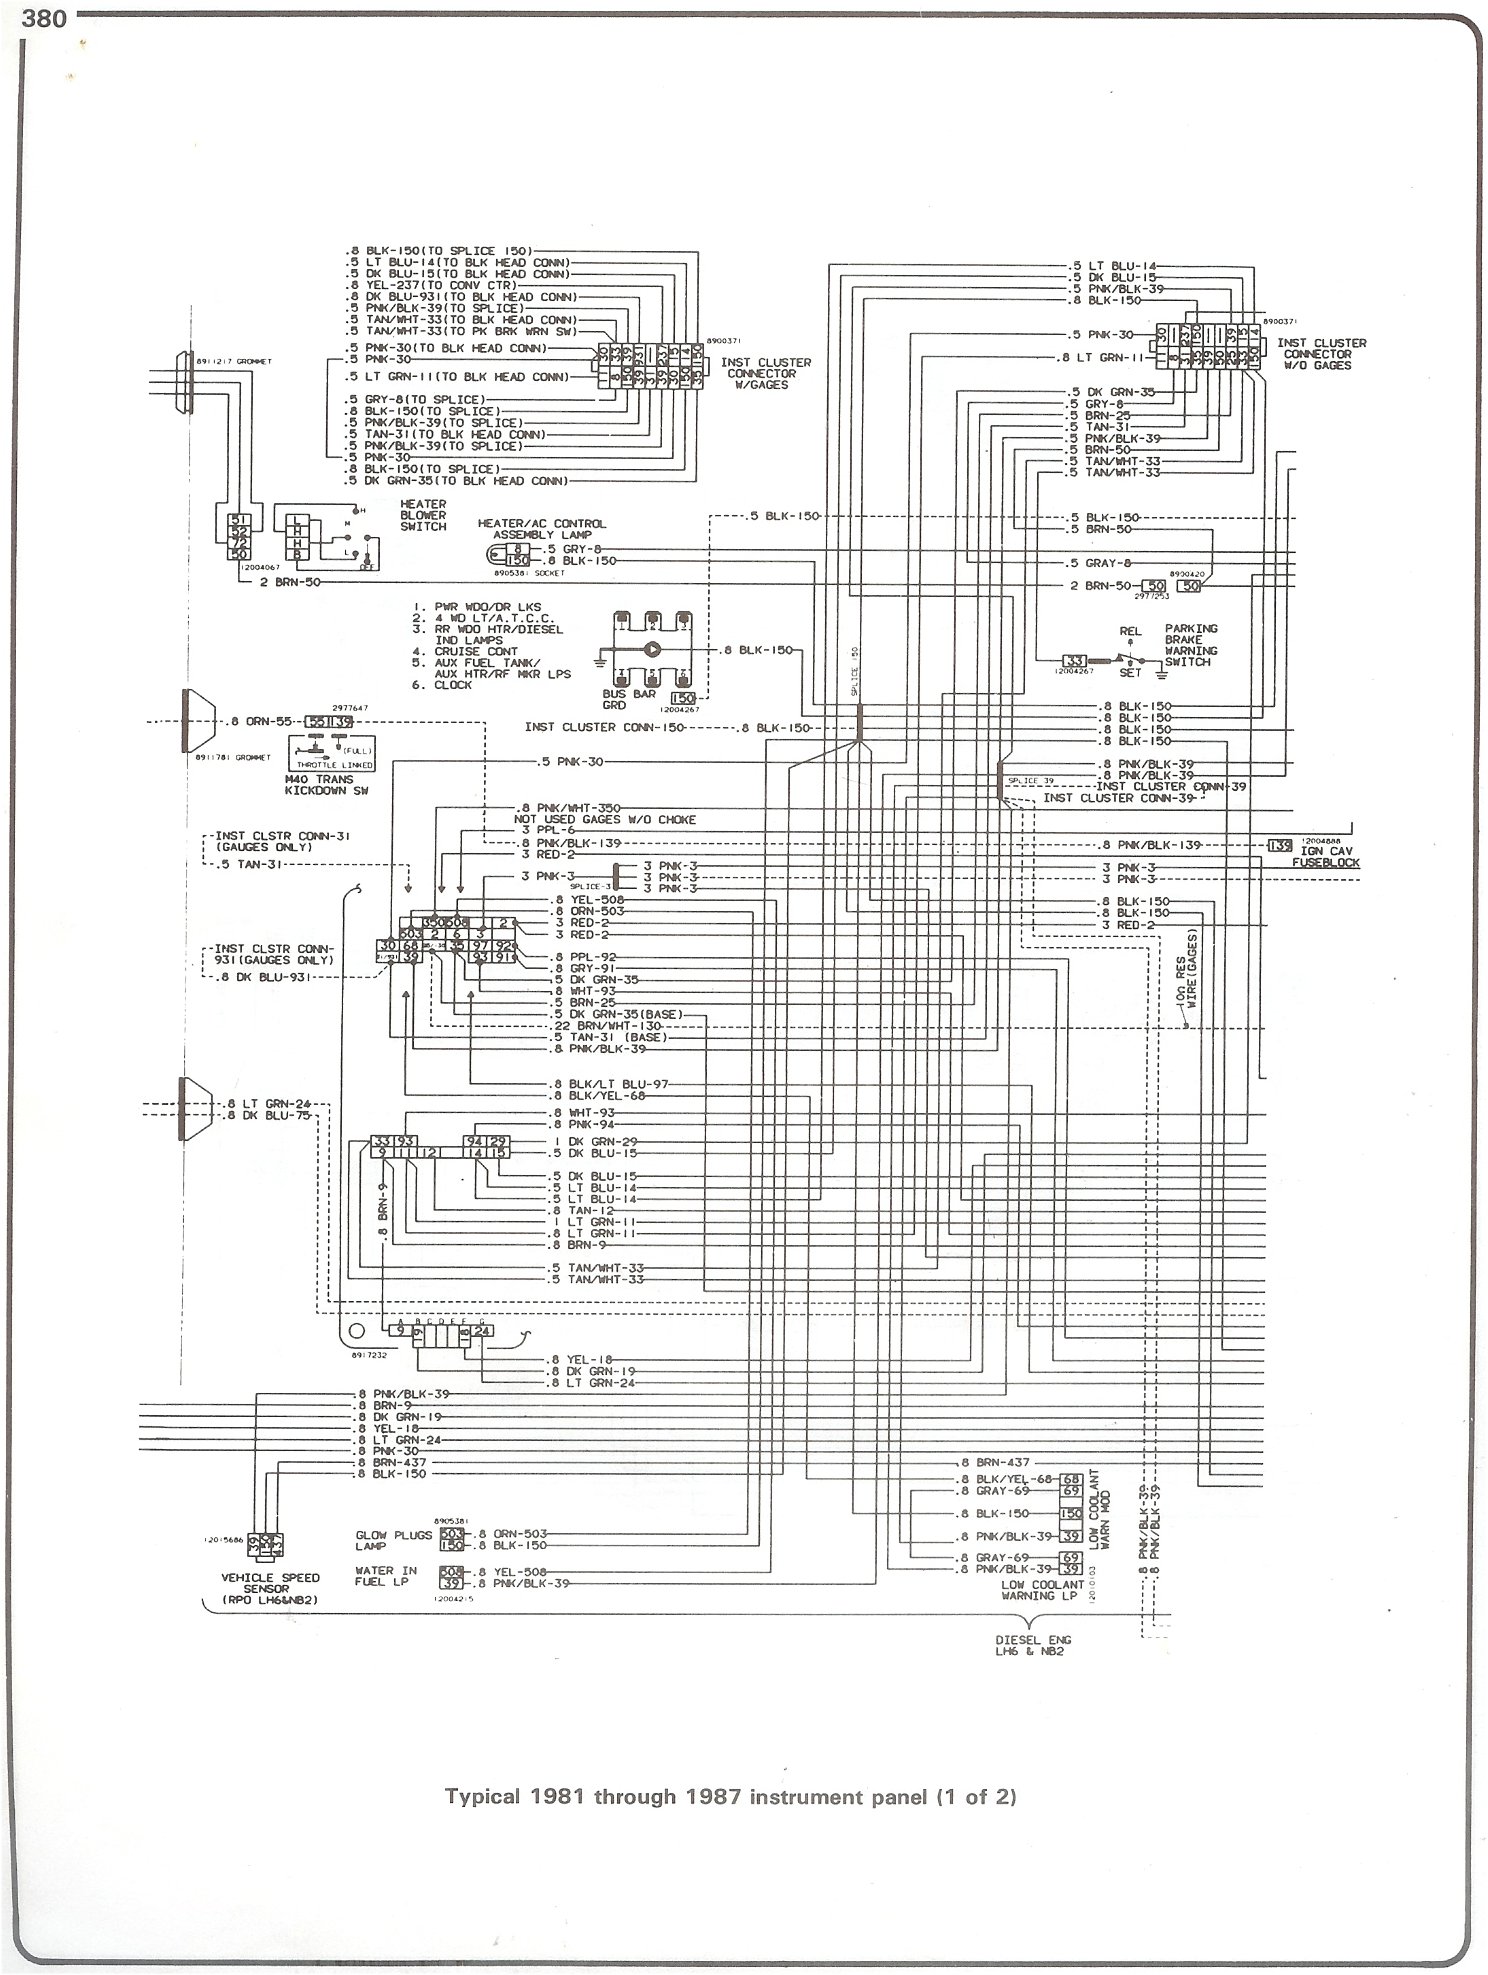 1 Wire Alternator Wiring Diagram from schematron.org